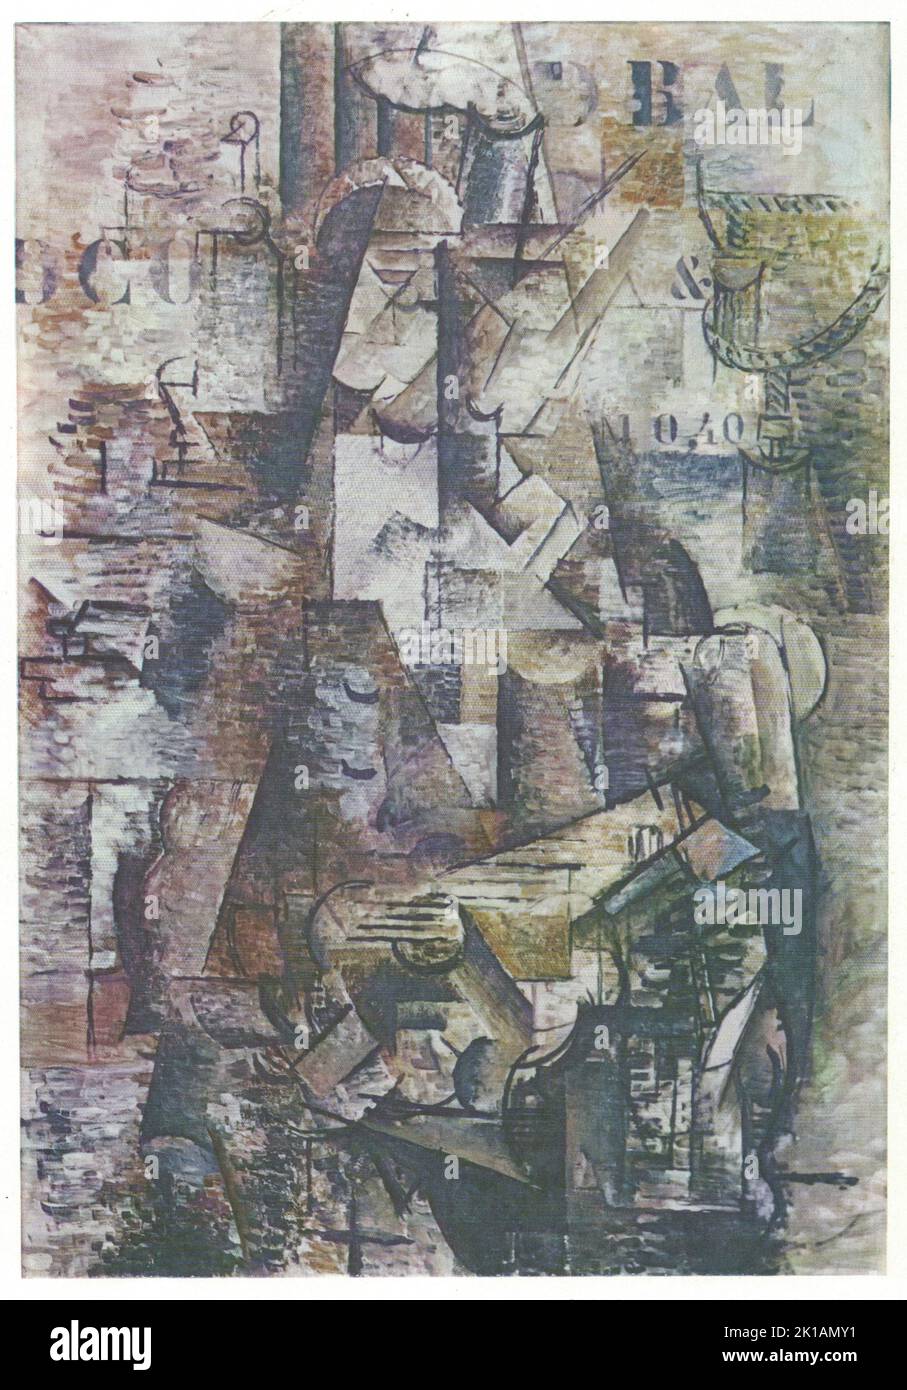 Georges Braque, il portoghese, 1911, olio su tela. Georges Braque, 13 maggio 1882 - 31 agosto 1963, è stato un grande pittore, collagista, disegnatore, incisore e scultore francese del 20th° secolo. I suoi contributi più notevoli furono nella sua alleanza con il Fauvismo del 1905, e il ruolo che svolse nello sviluppo del Cubismo. Il lavoro del Braques tra il 1908 e il 1912 è strettamente associato a quello del suo collega Pablo Picasso. Le loro rispettive opere cubiste erano indistinguibili per molti anni, eppure la natura tranquilla di Braque fu parzialmente eclissata dalla fama e dalla notorietà di Picasso. Foto Stock